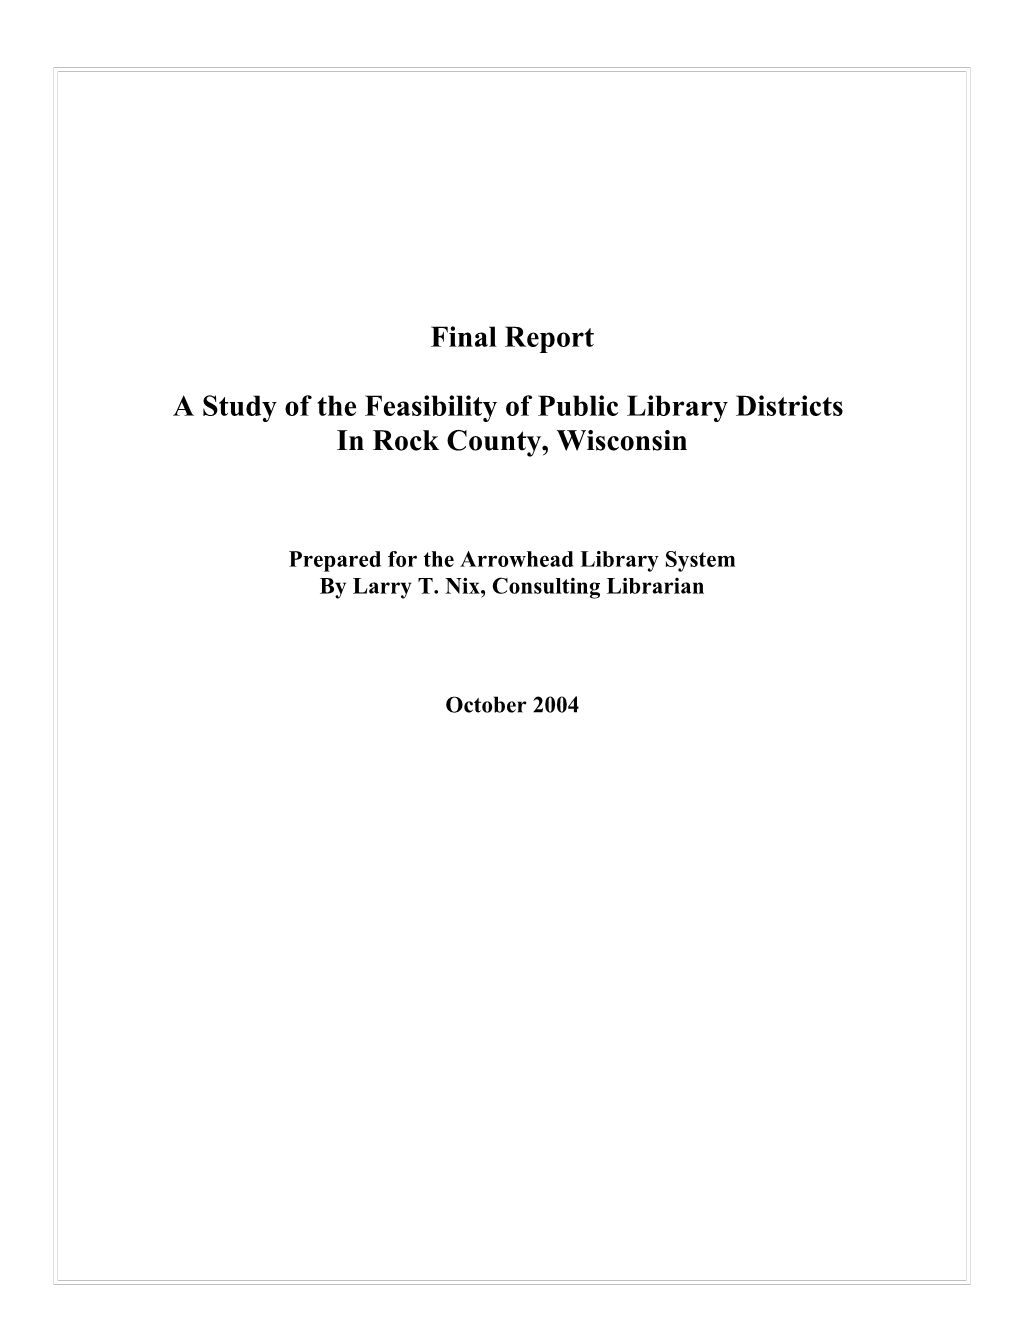 Scenarios for Public Library District in Rock County 9